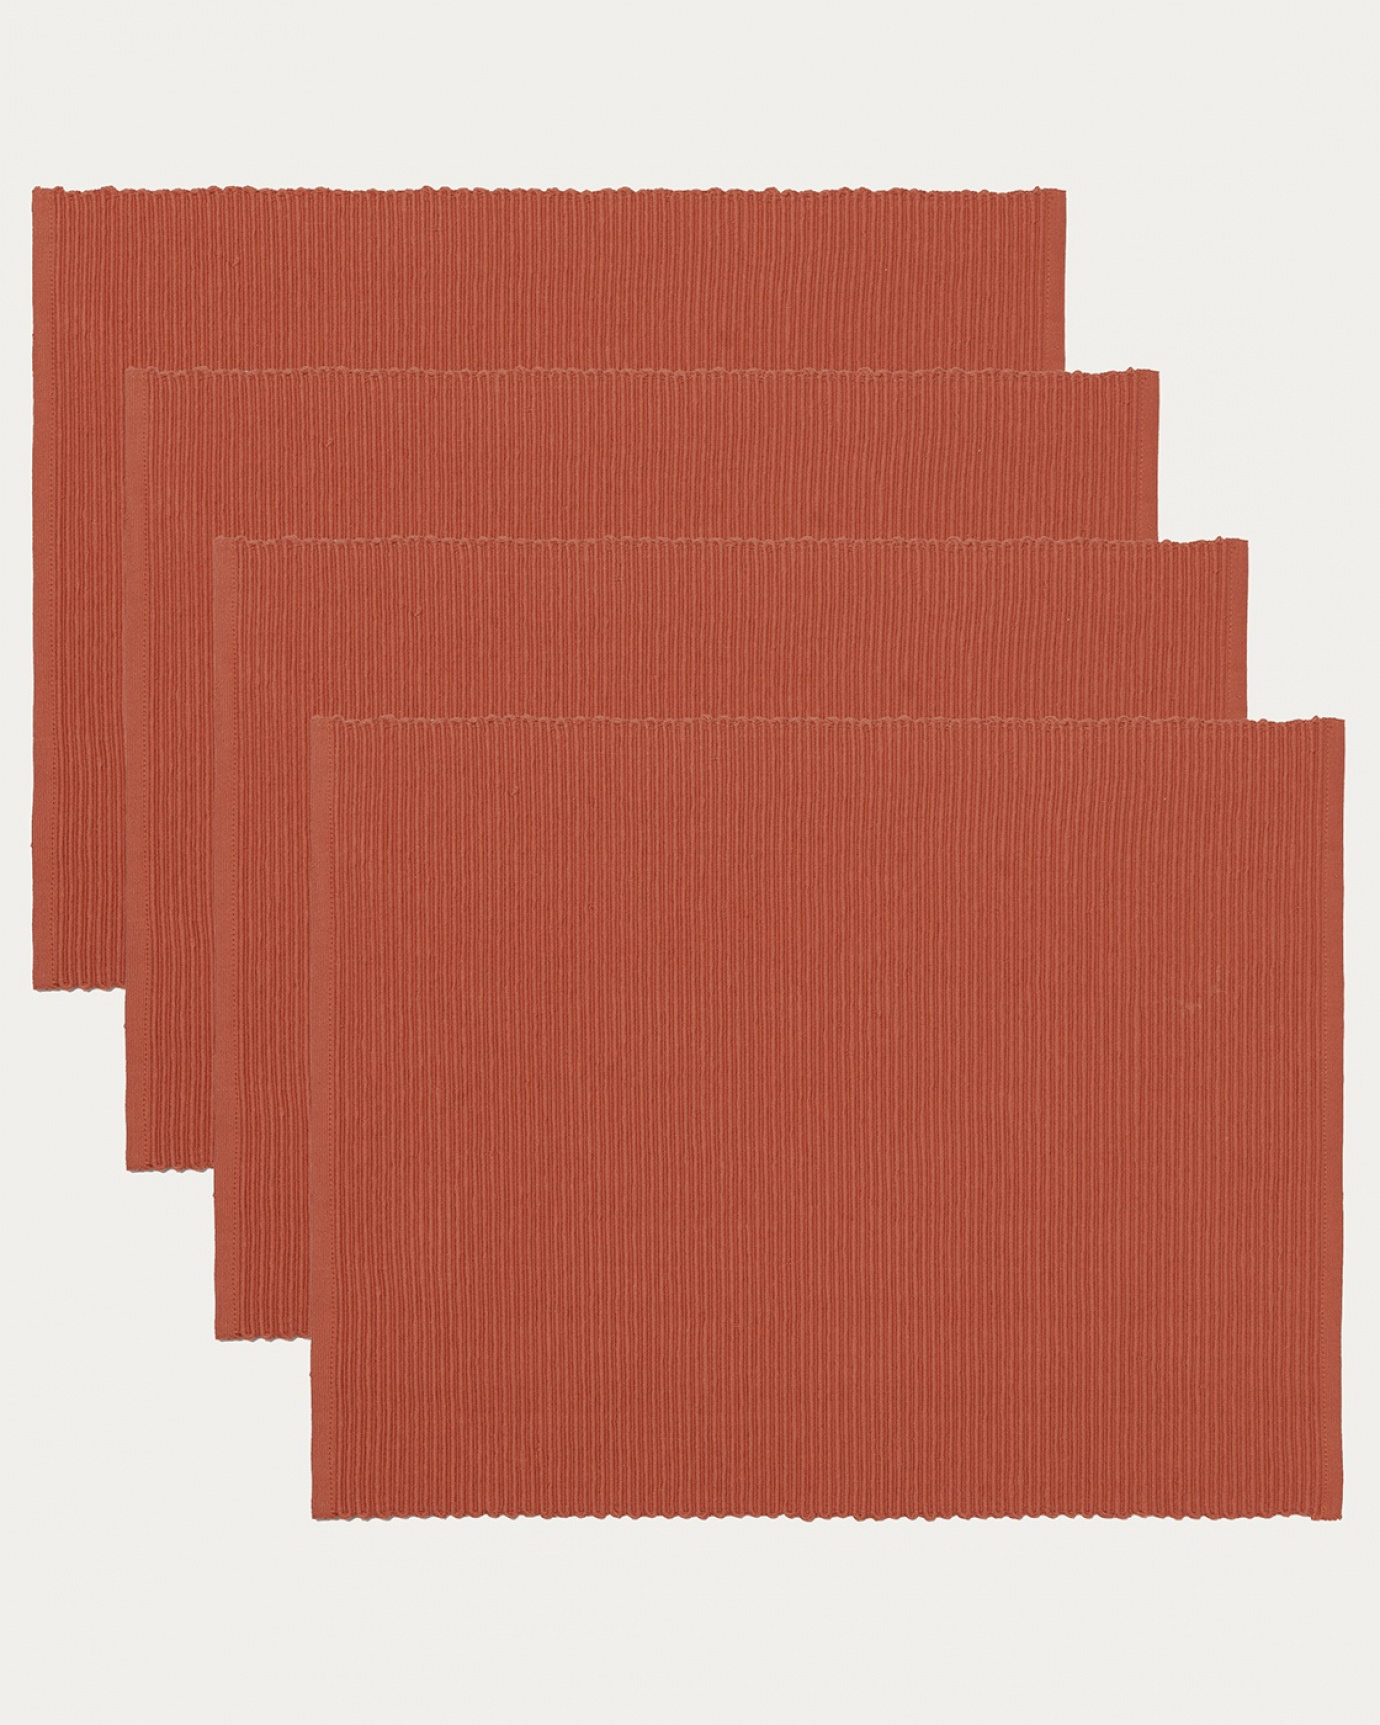 Produktbild rostorange UNI Tischset aus weicher Baumwolle in Rippenqualität von LINUM DESIGN. Größe 35x46 cm und in 4er-Pack verkauft.